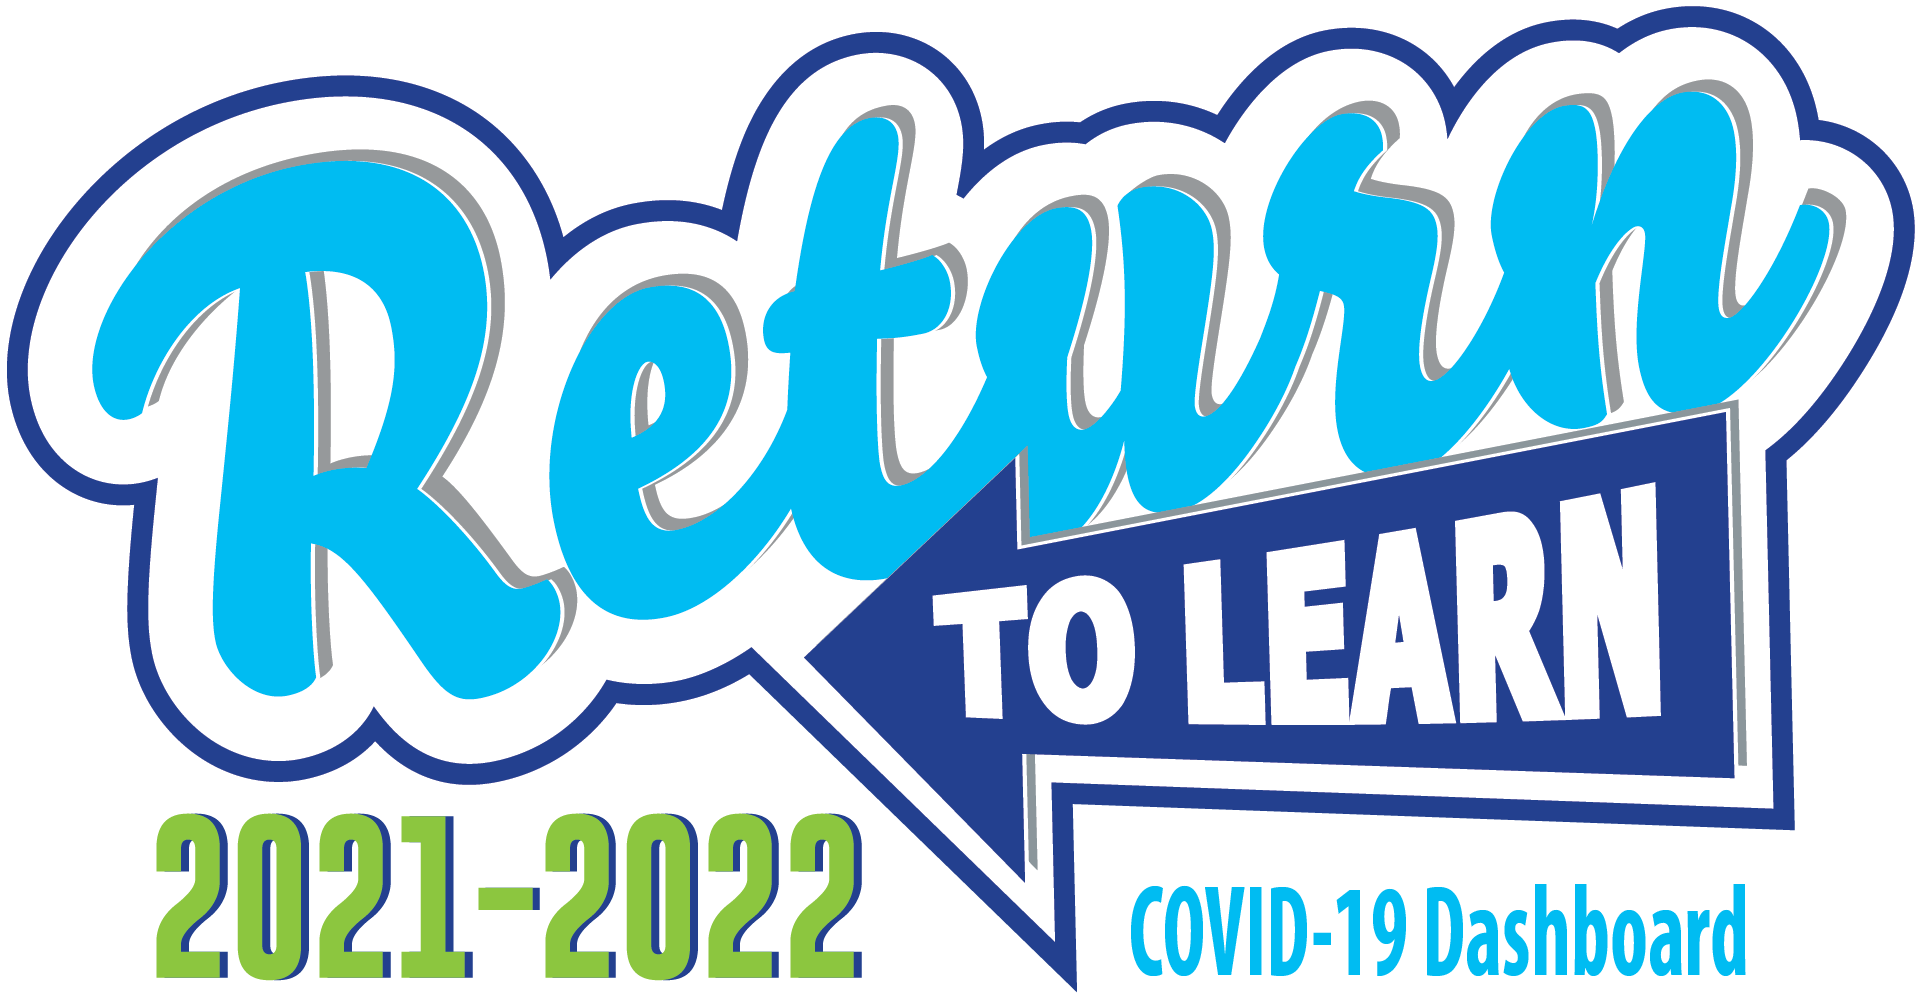 Return to learn logo